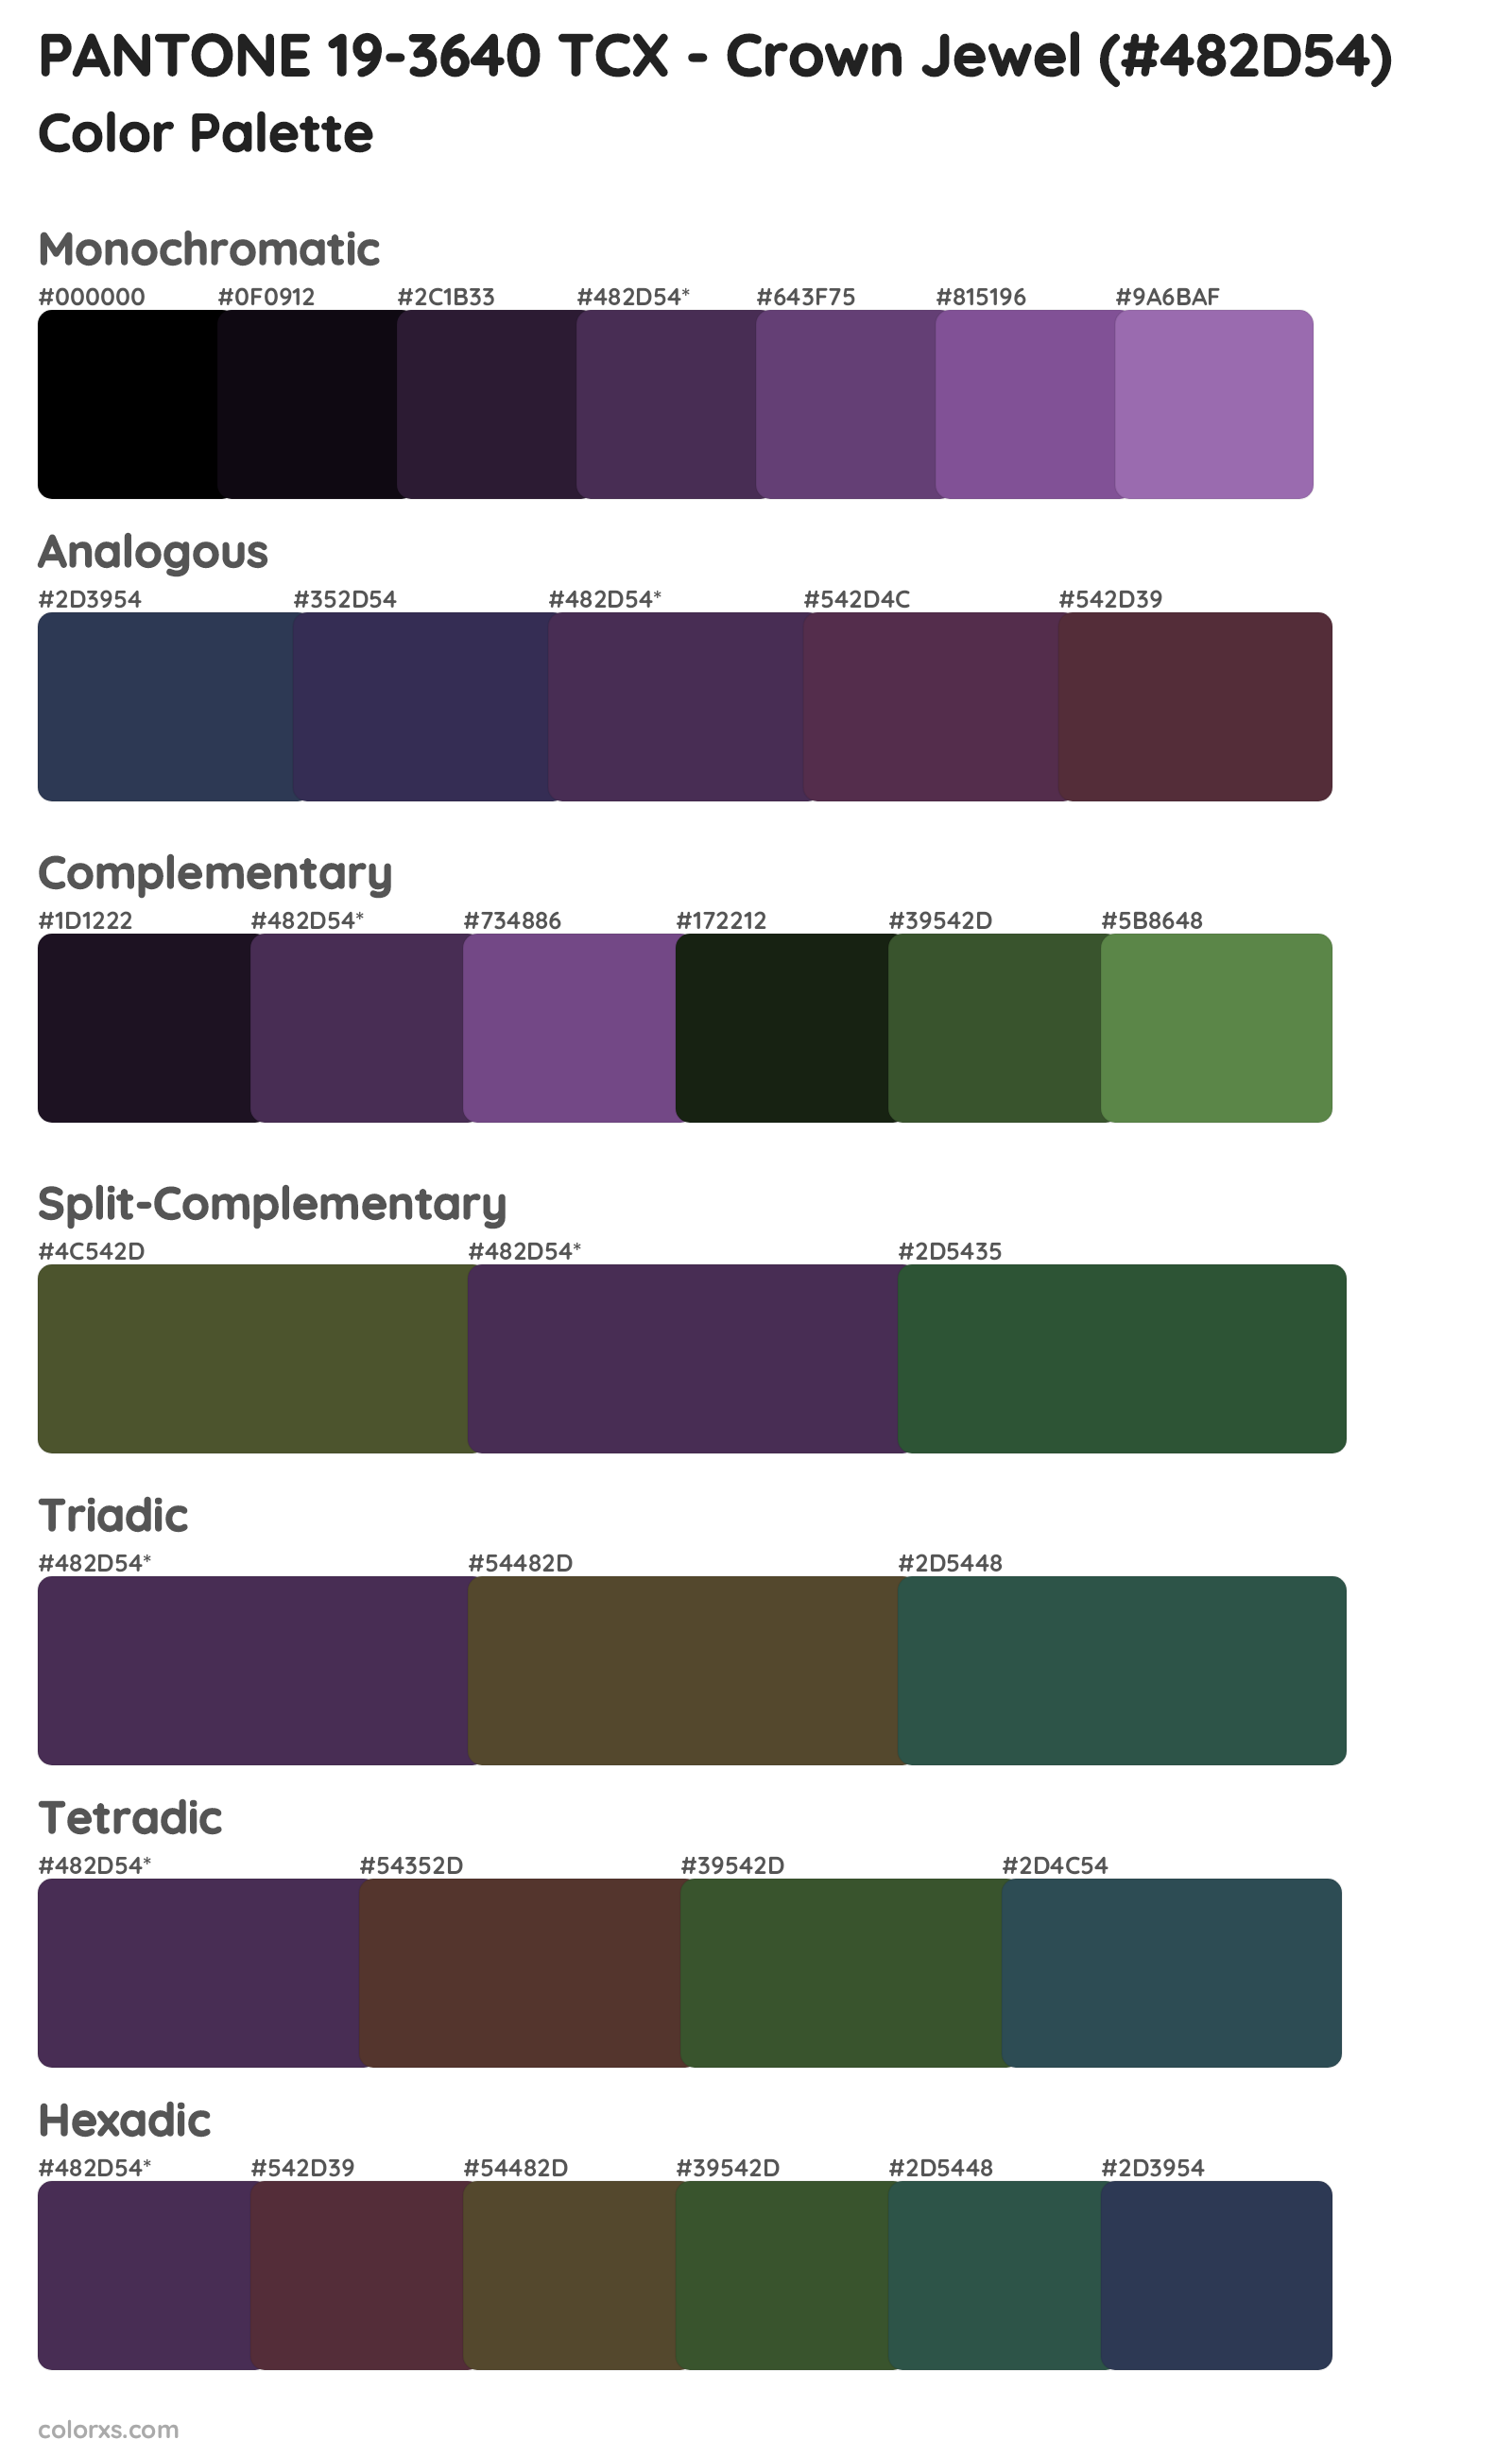 PANTONE 19-3640 TCX - Crown Jewel Color Scheme Palettes